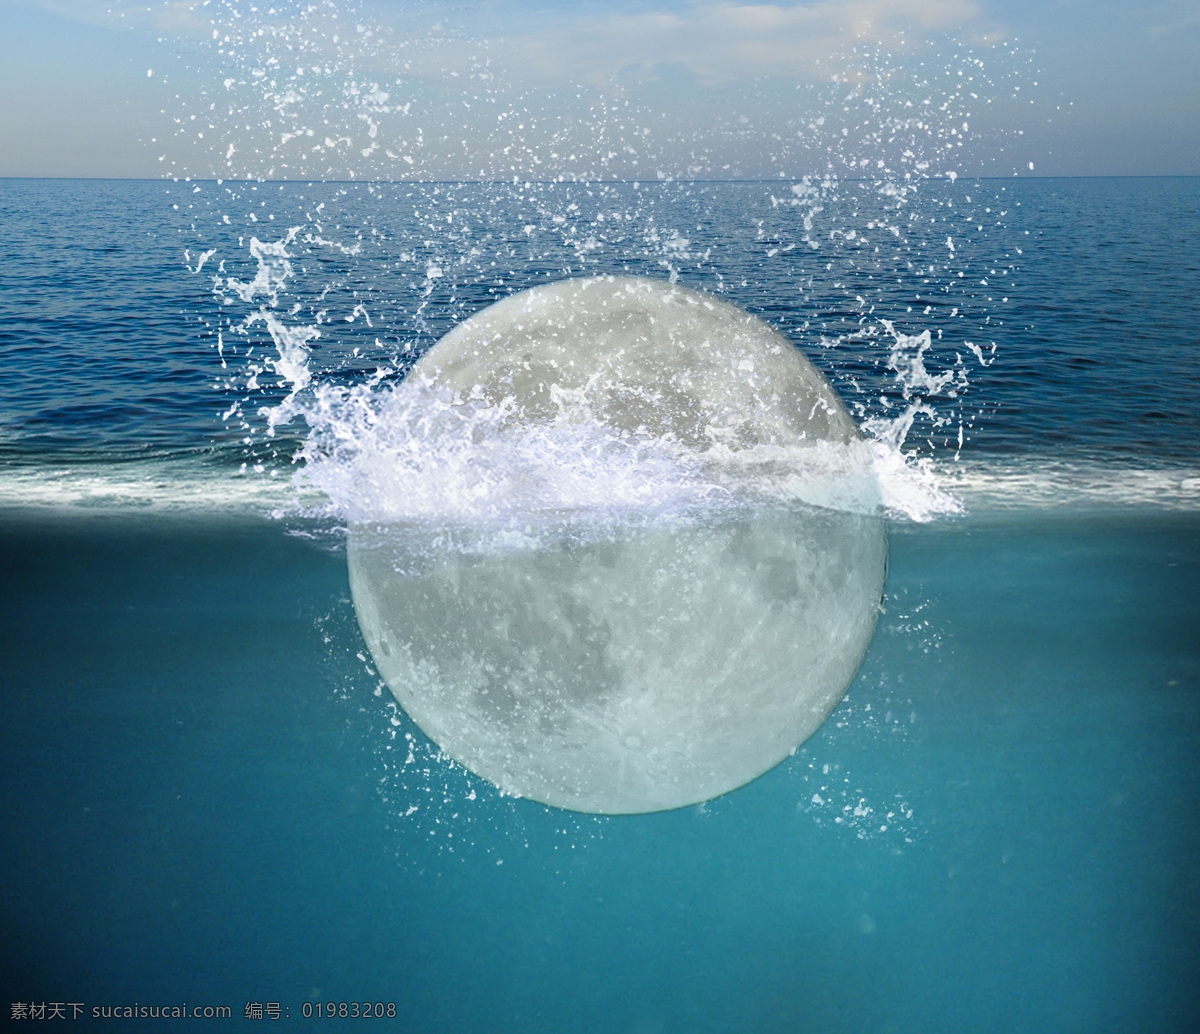 月亮 掉 进 大海 创意 合成 水中的月亮 镜花水月 月亮掉进大海 创意合成素材 云 水浪 海边 海天一线 海 浪花 波光粼粼 水面 水滴 水泡 水 月光 抽象 天空 大海图片 大海合成 蓝天 科技背景